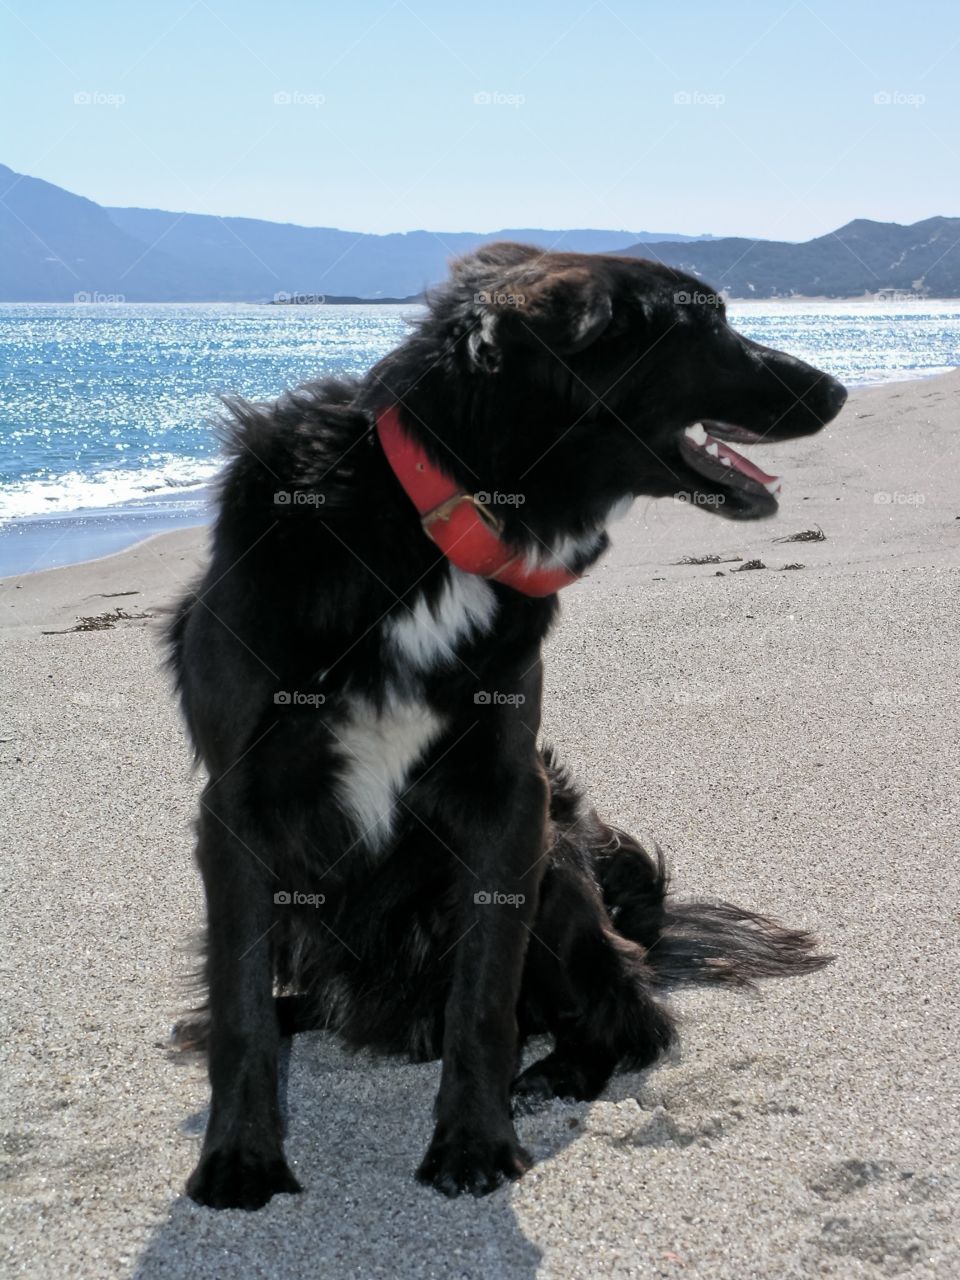 A dog is on the beach